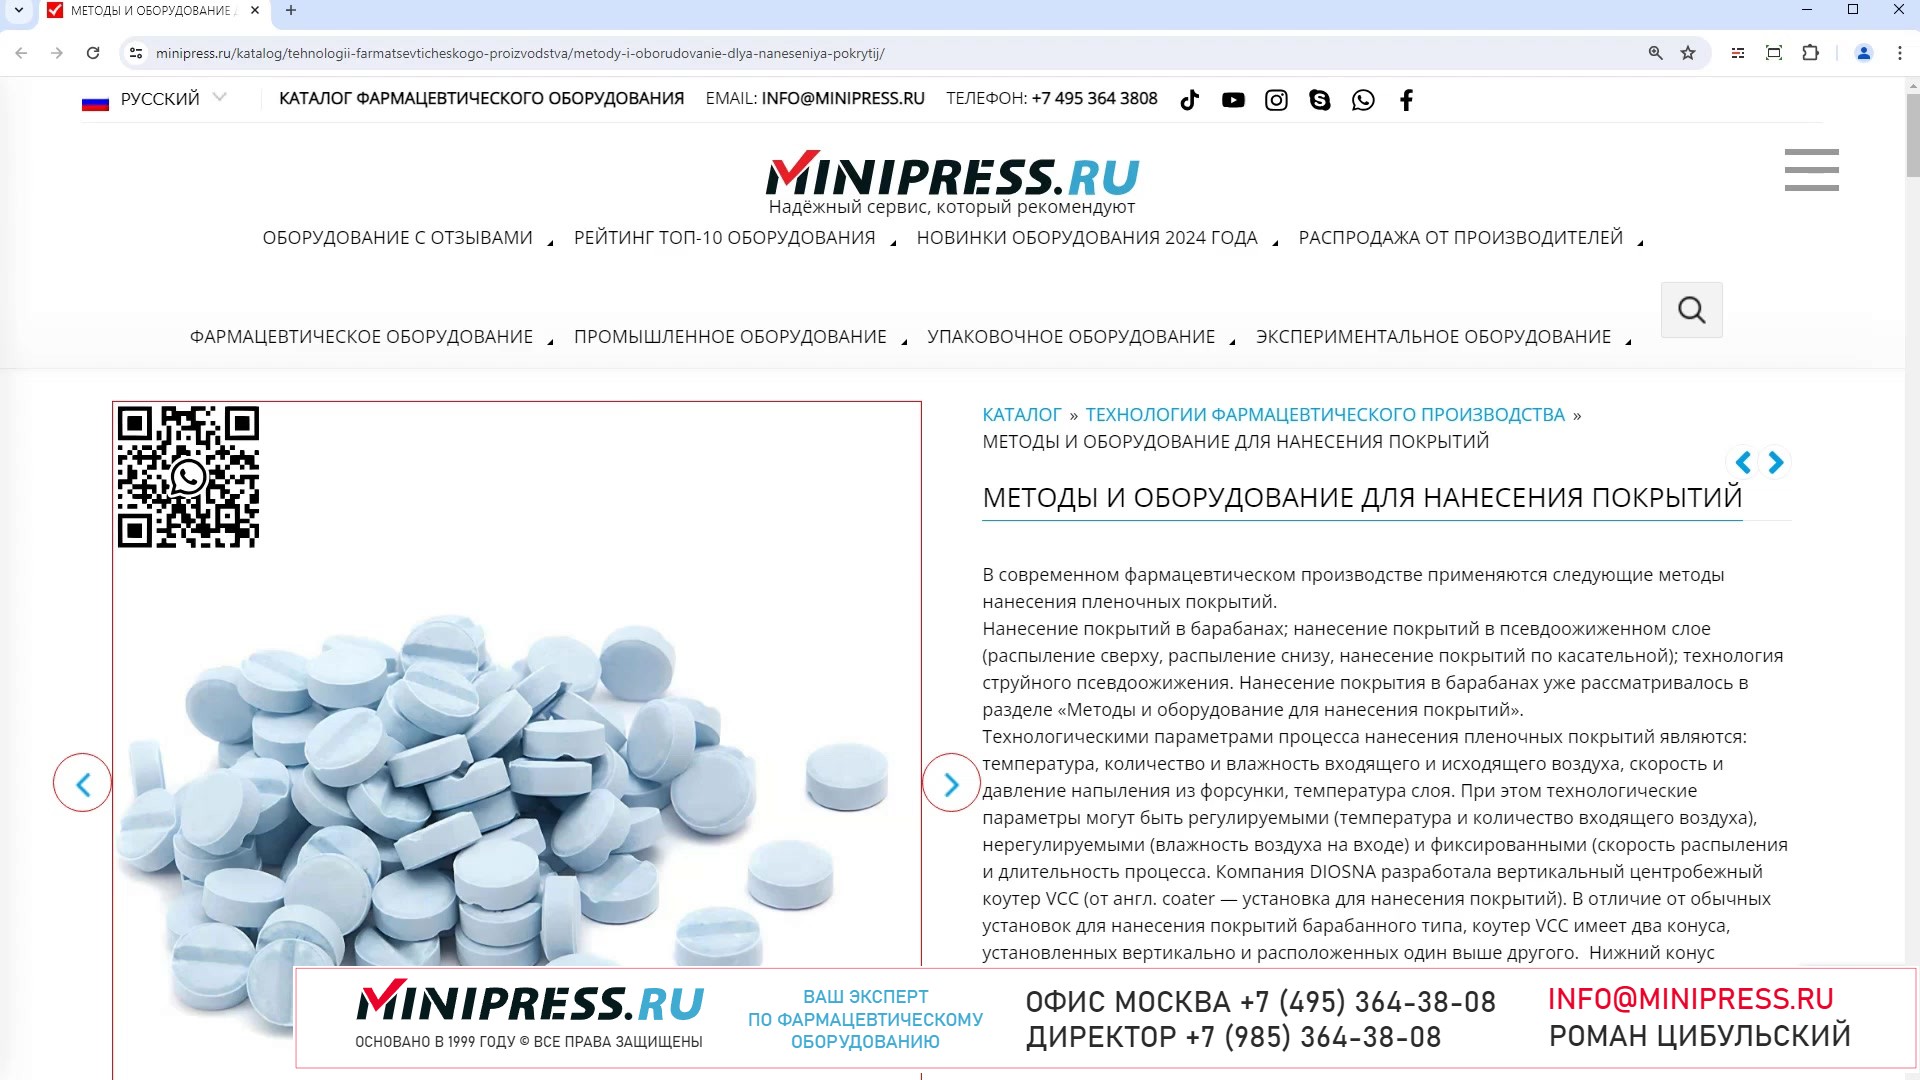 Minipress.ru Методы и оборудование для нанесения покрытий